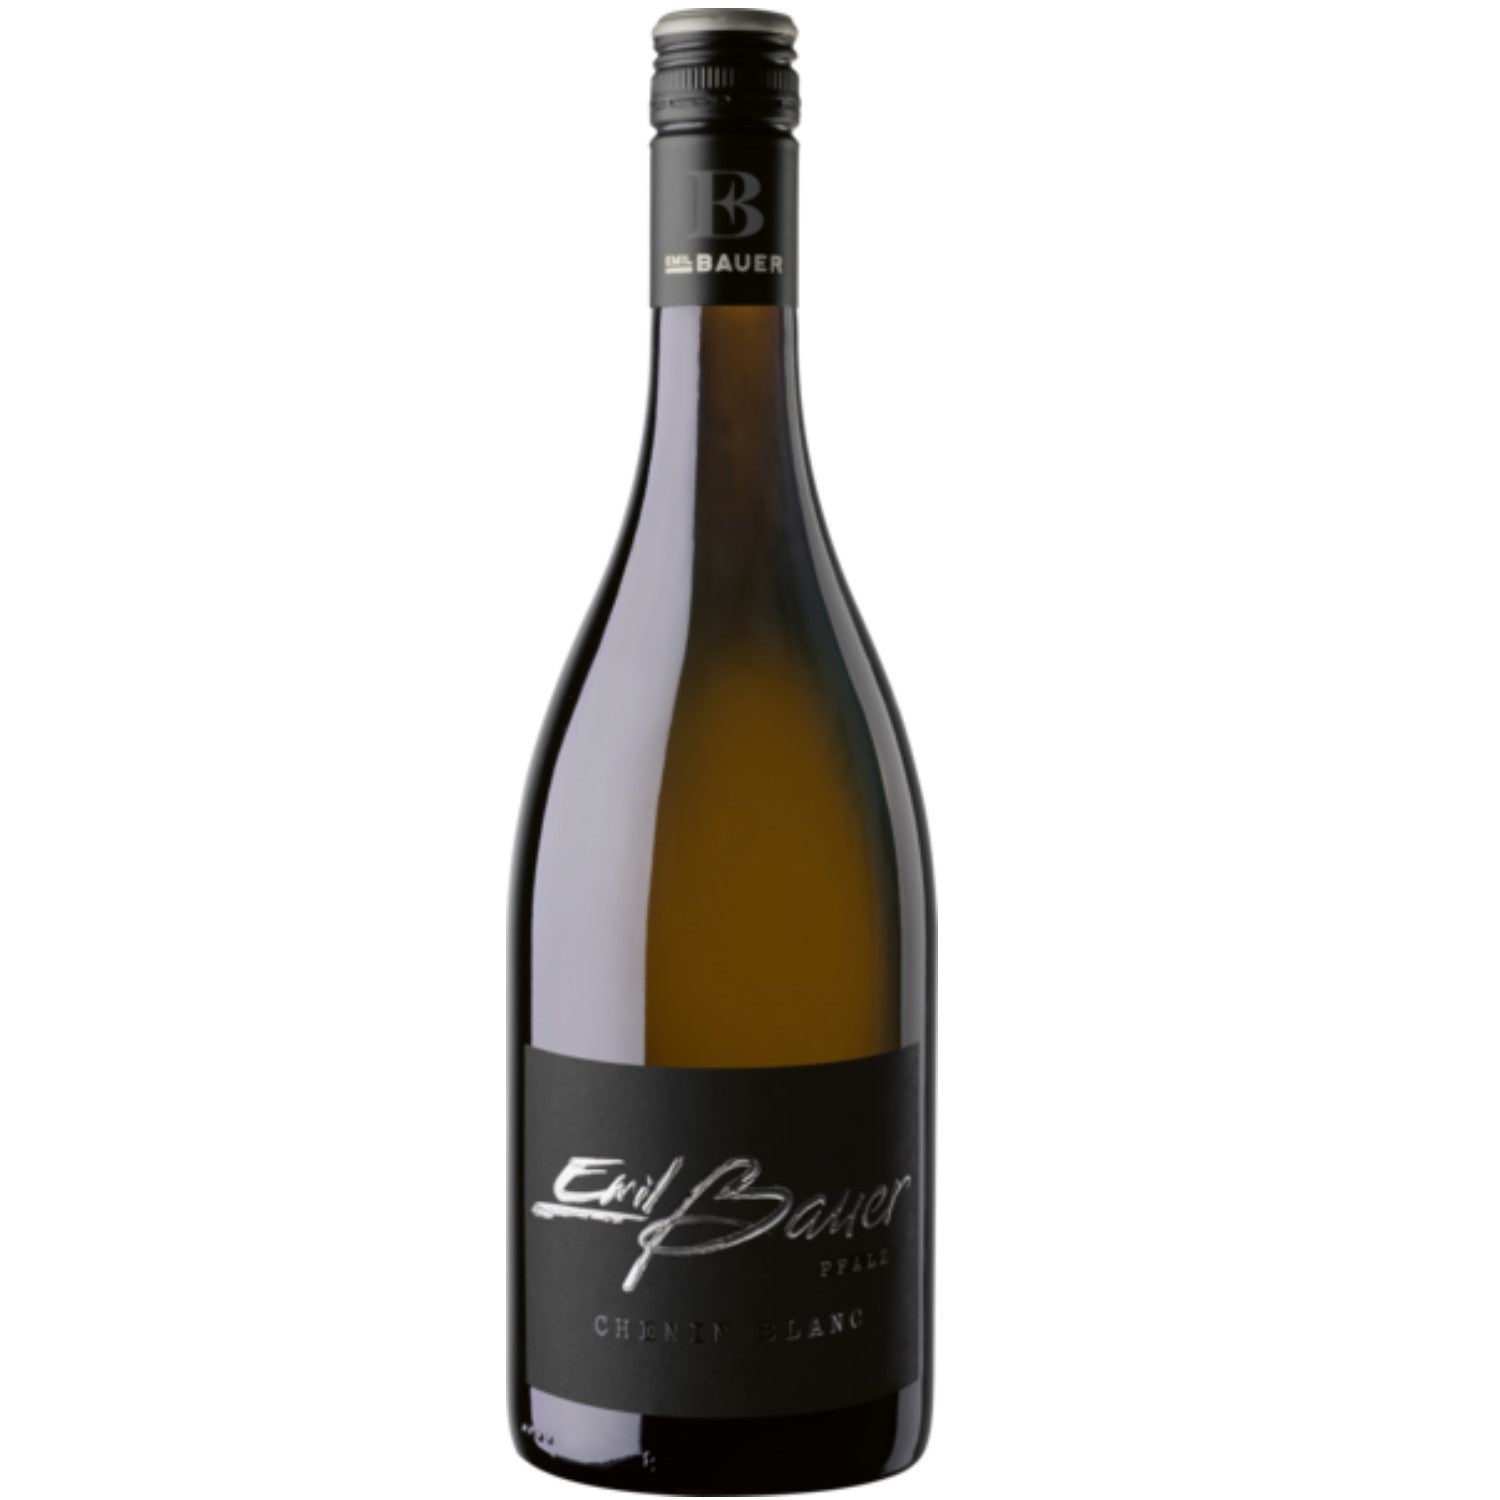 Emil Bauer Black Label Chenin Blanc QbA Weißwein Wein trocken Deutschland (3 x 0.75l) - Versanel -